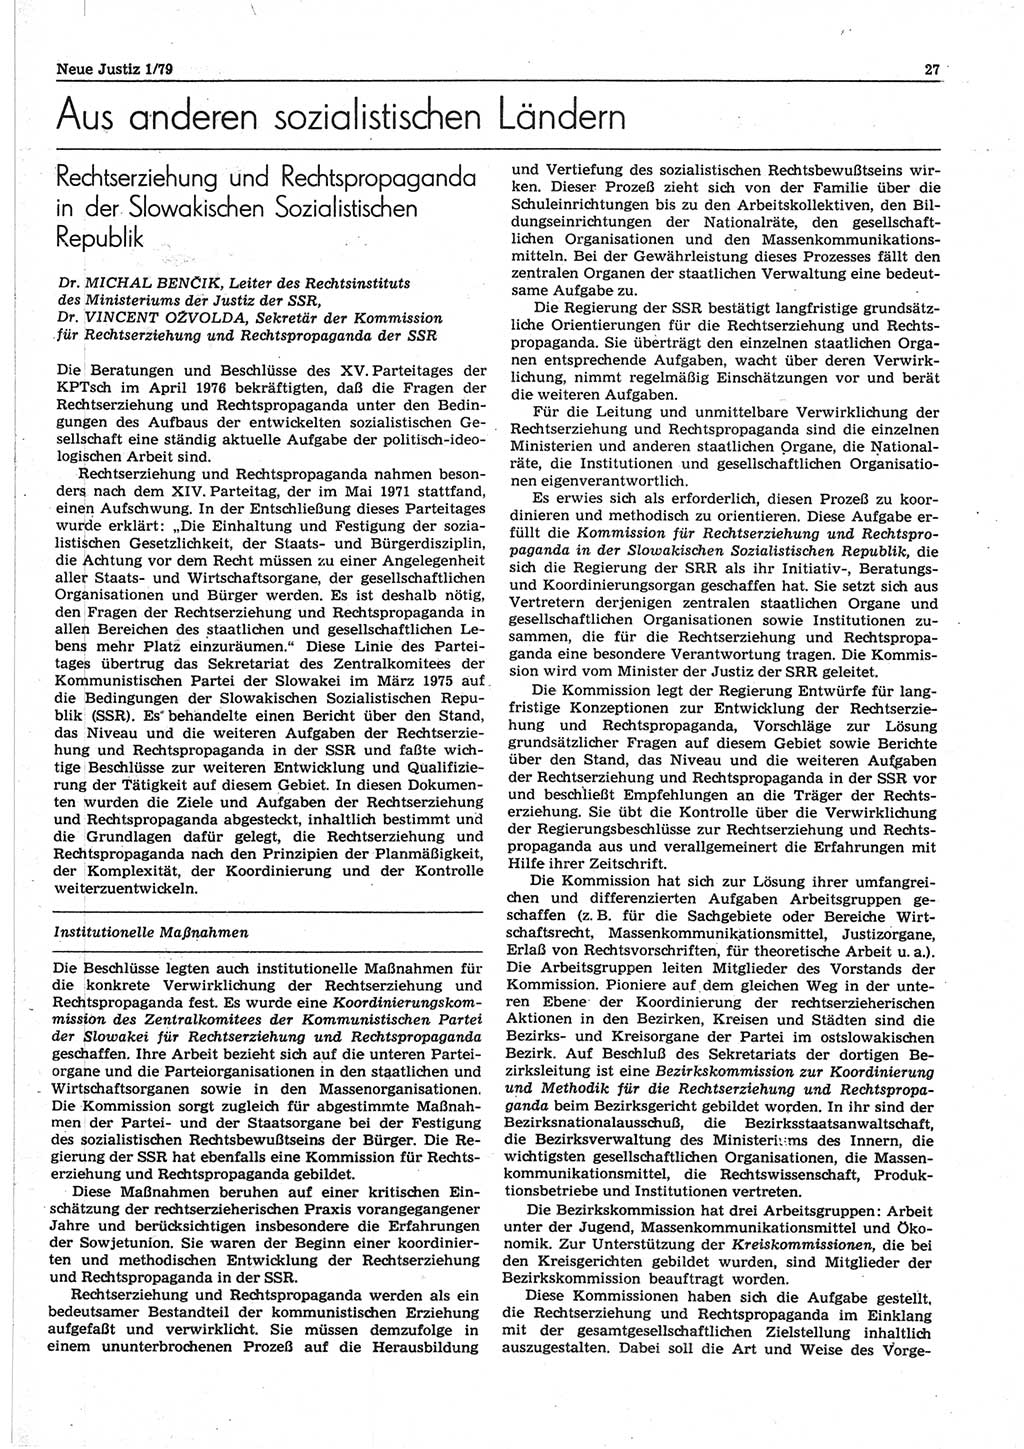 Neue Justiz (NJ), Zeitschrift für sozialistisches Recht und Gesetzlichkeit [Deutsche Demokratische Republik (DDR)], 33. Jahrgang 1979, Seite 27 (NJ DDR 1979, S. 27)